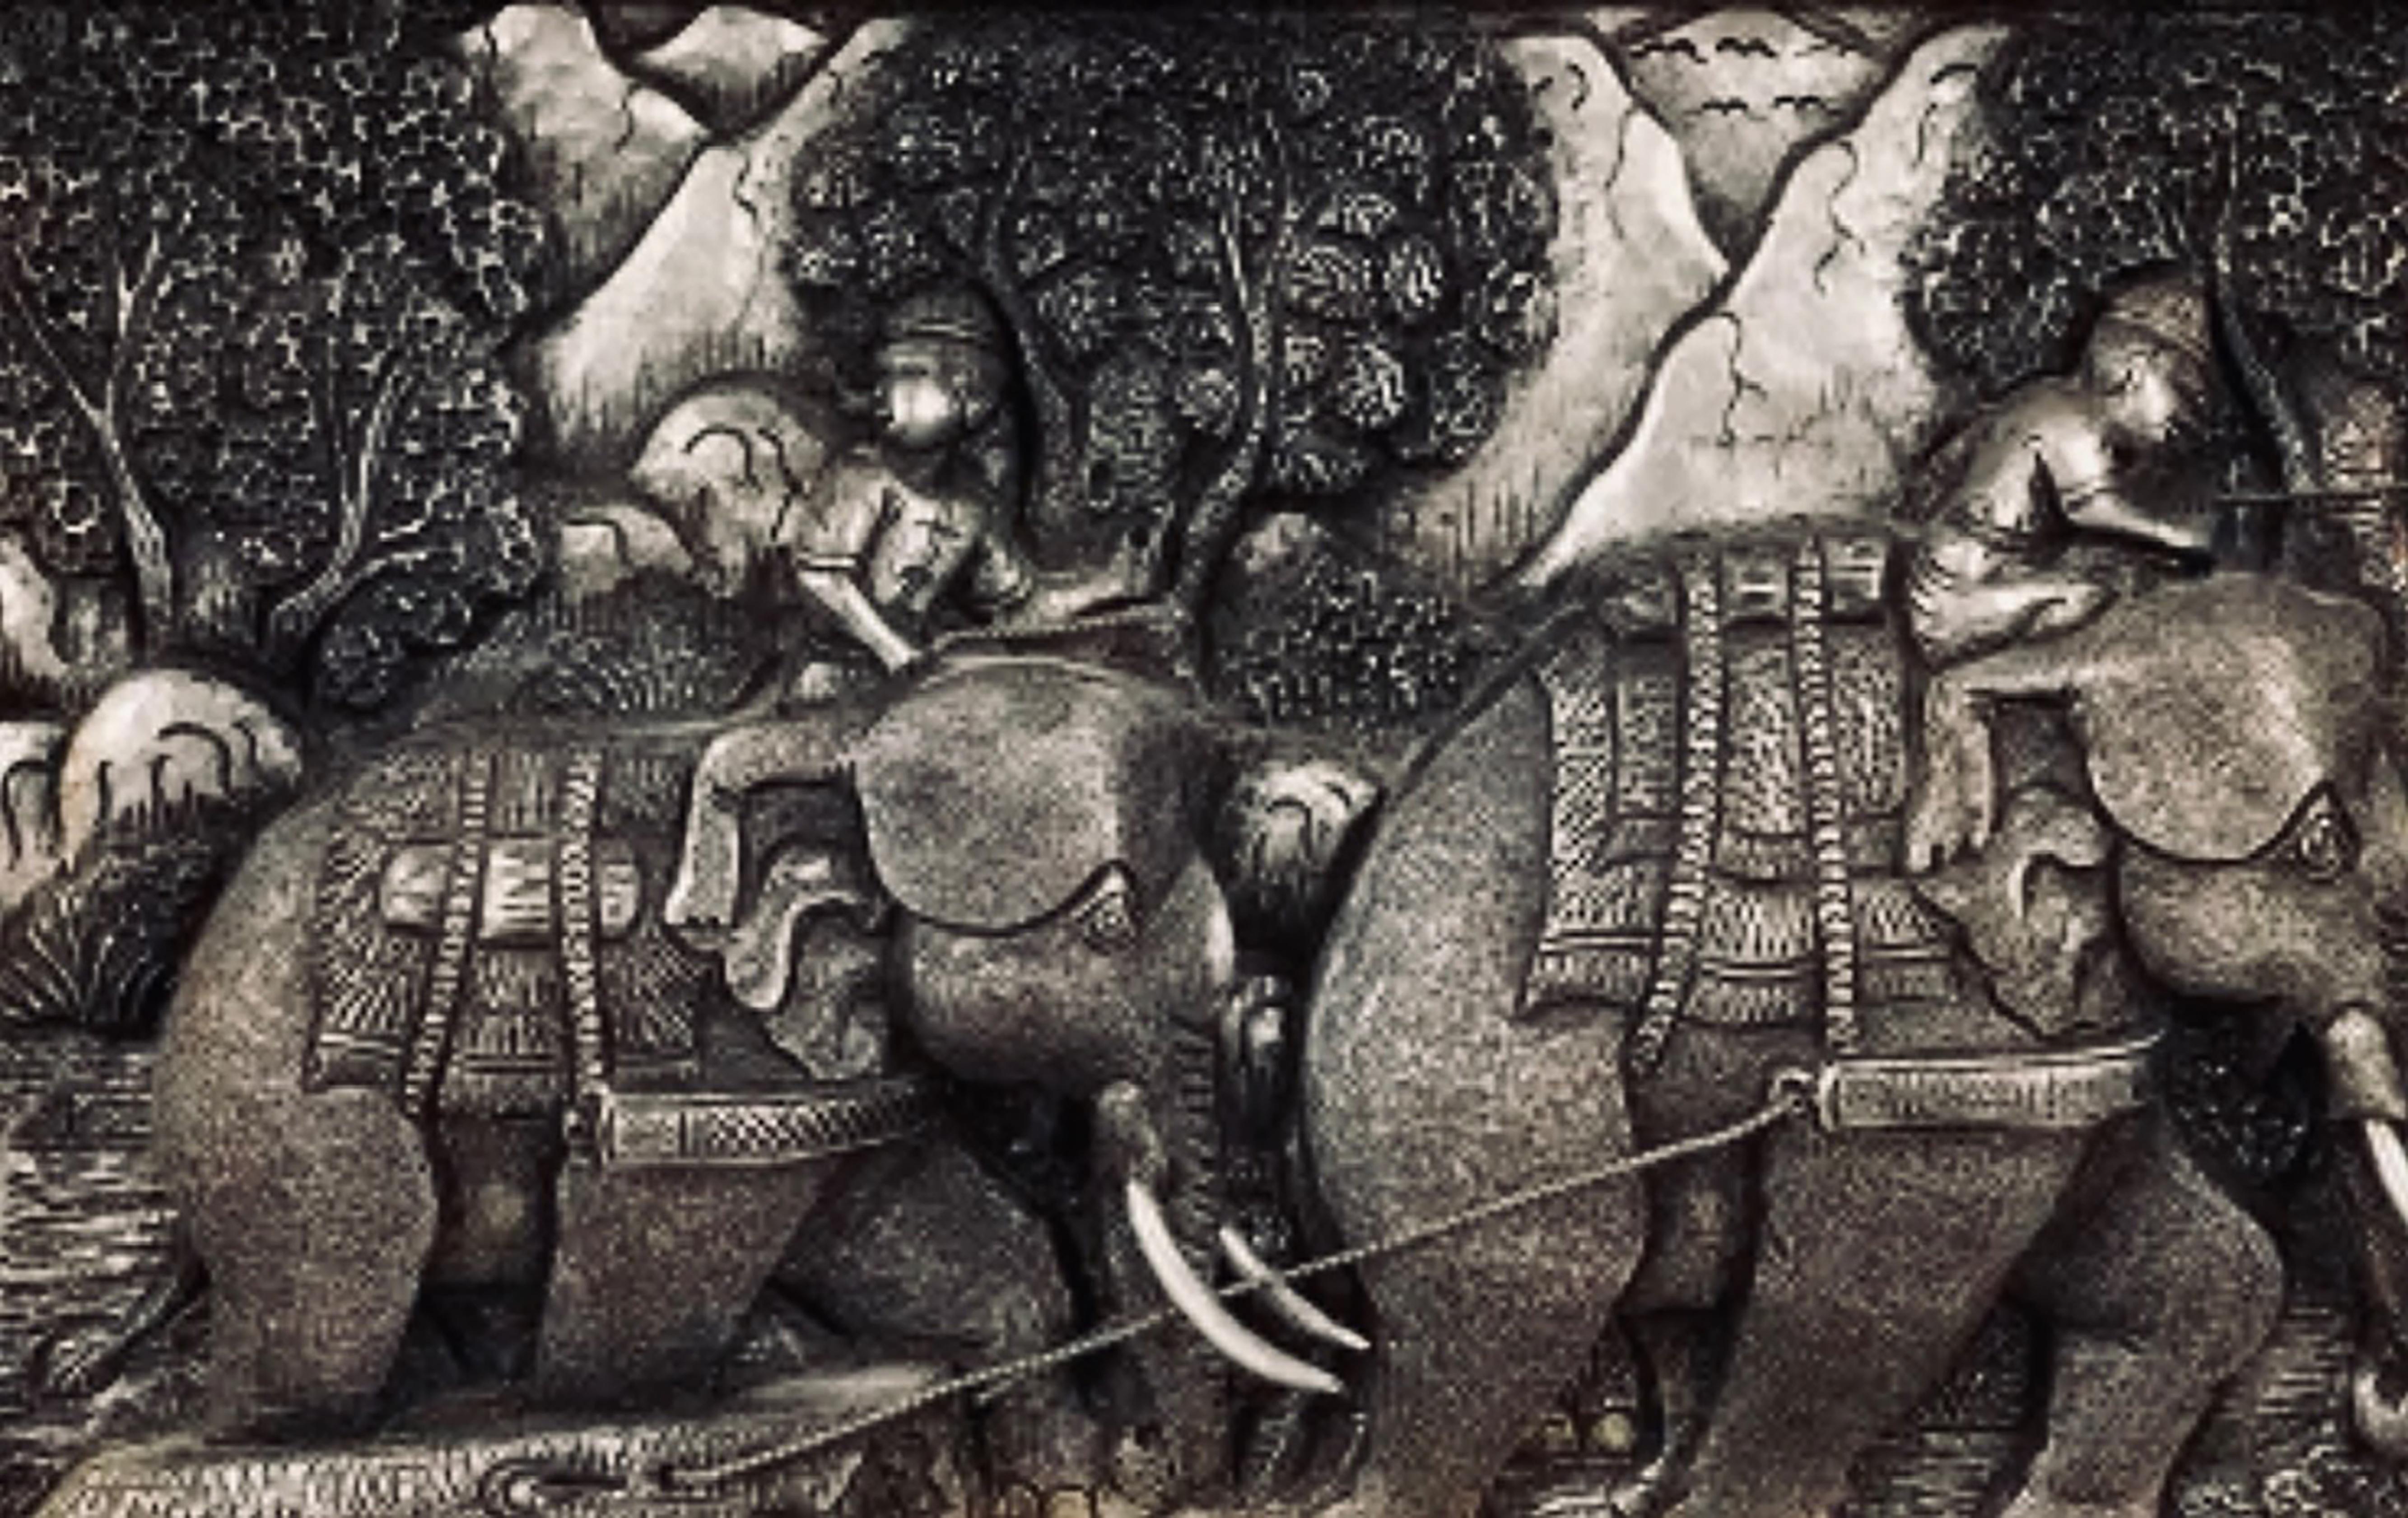 776 Gerahmte chinesische Skulptur mit Früchten aus Silber und Zinn.
Mit Szenen von Elefanten meisterhaft gemacht.
Abmessungen: 16